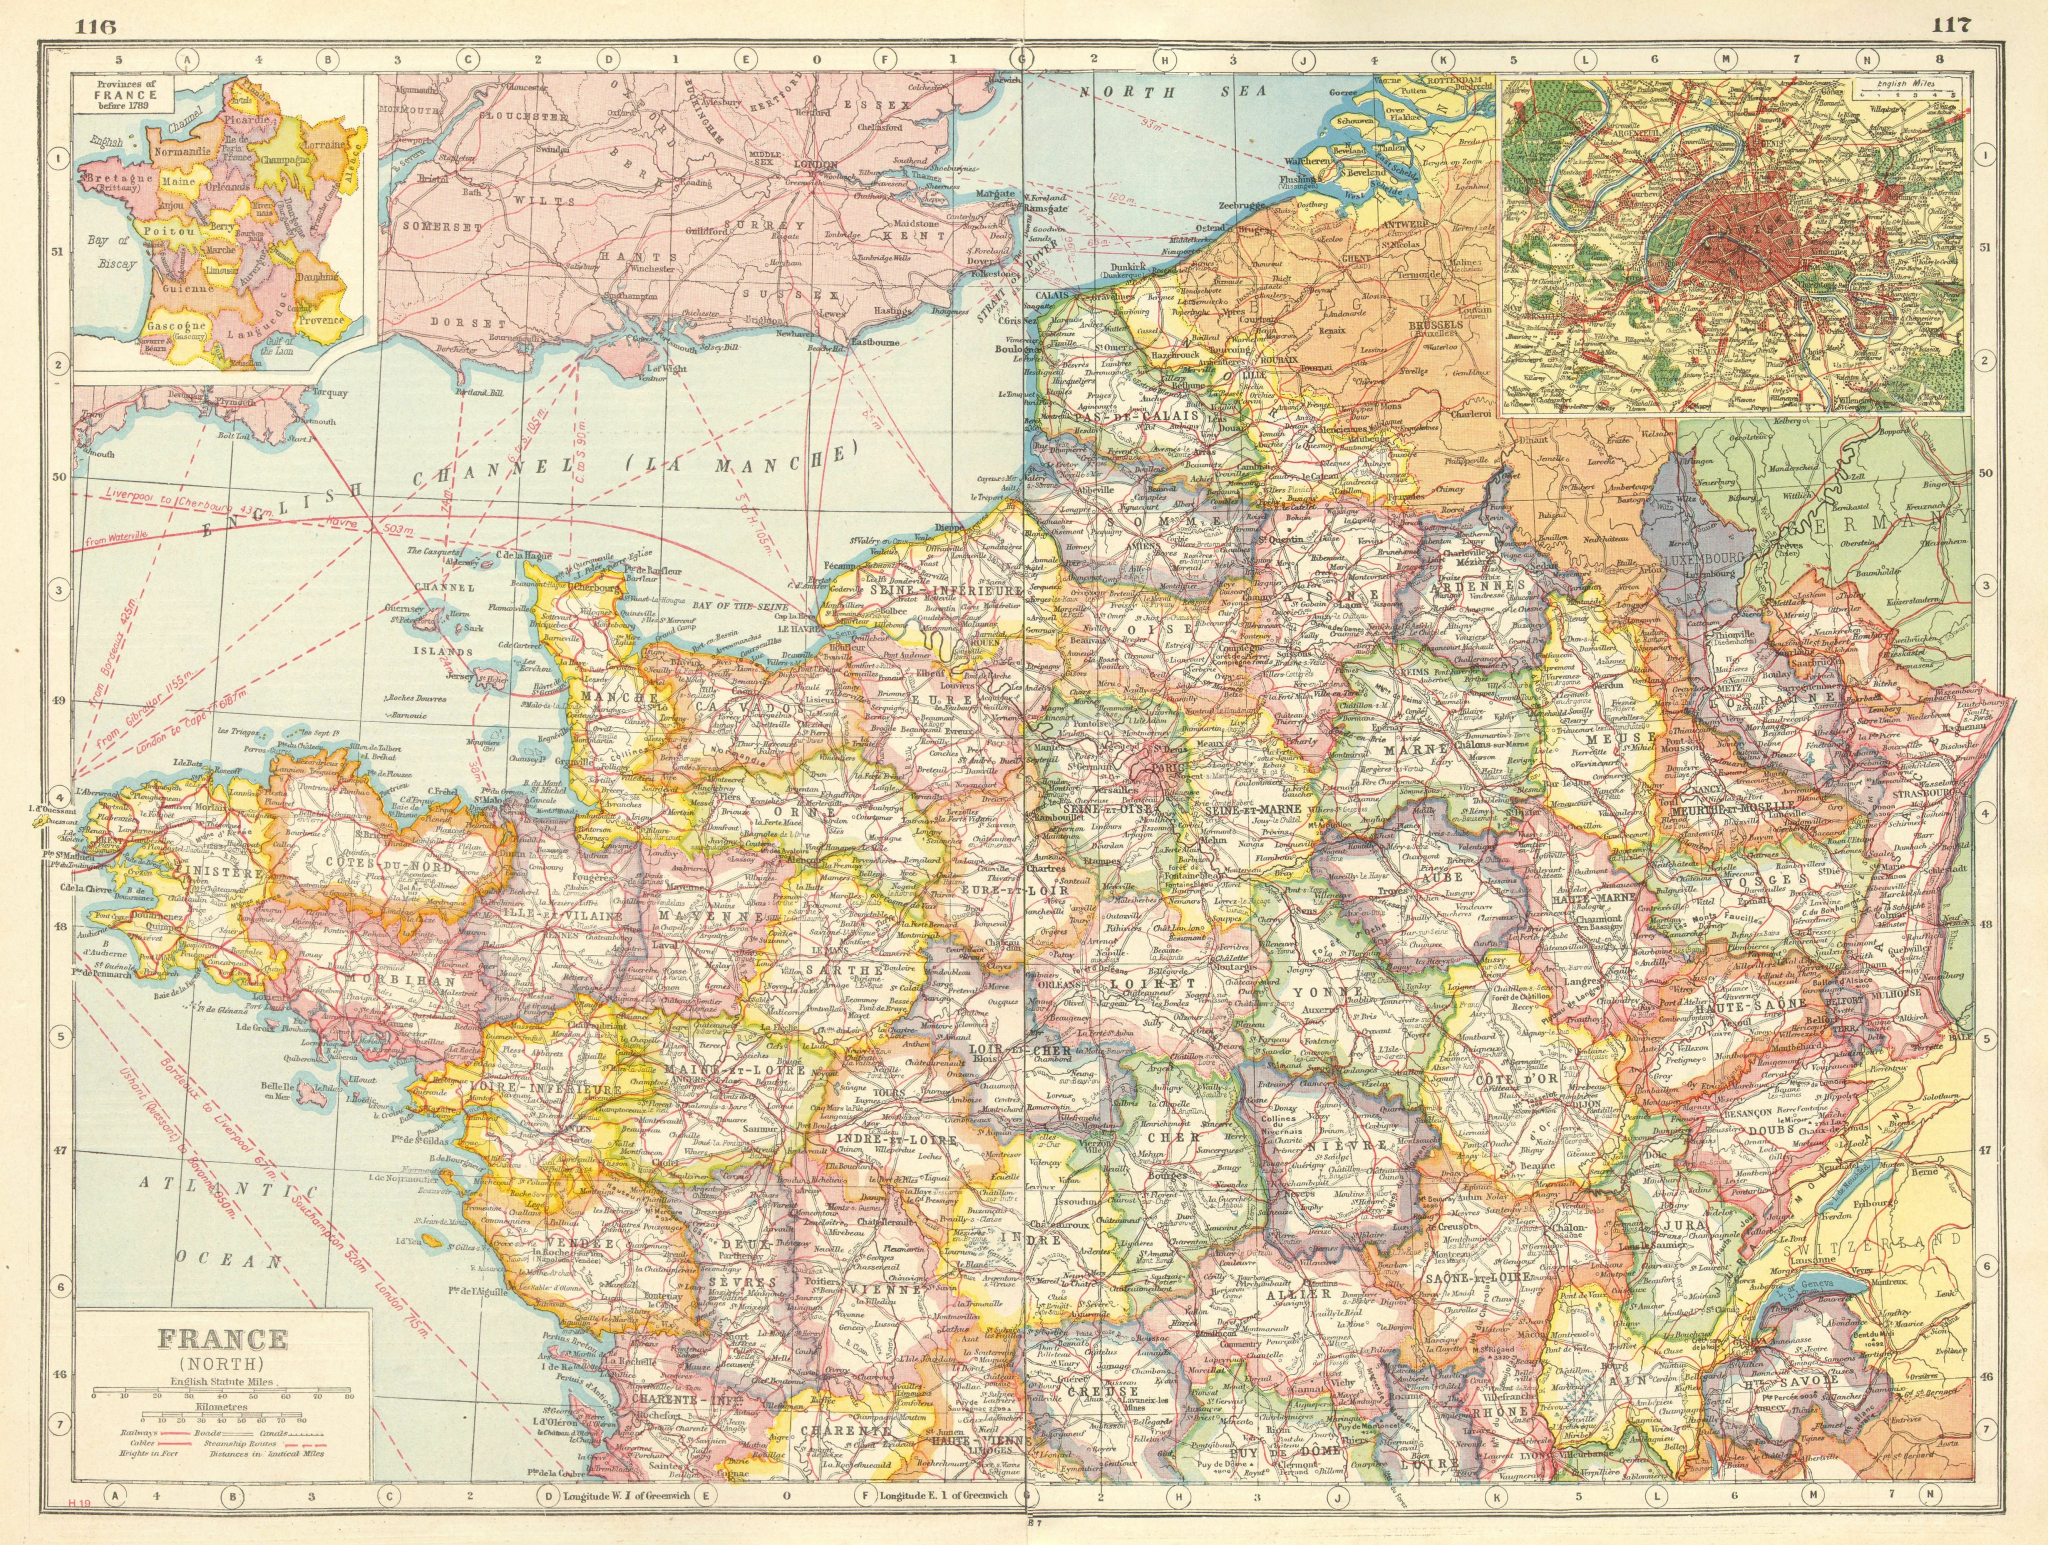 Associate Product NORTHERN FRANCE. Departements. Inset Provinces pre-1789 & Paris plan 1920 map